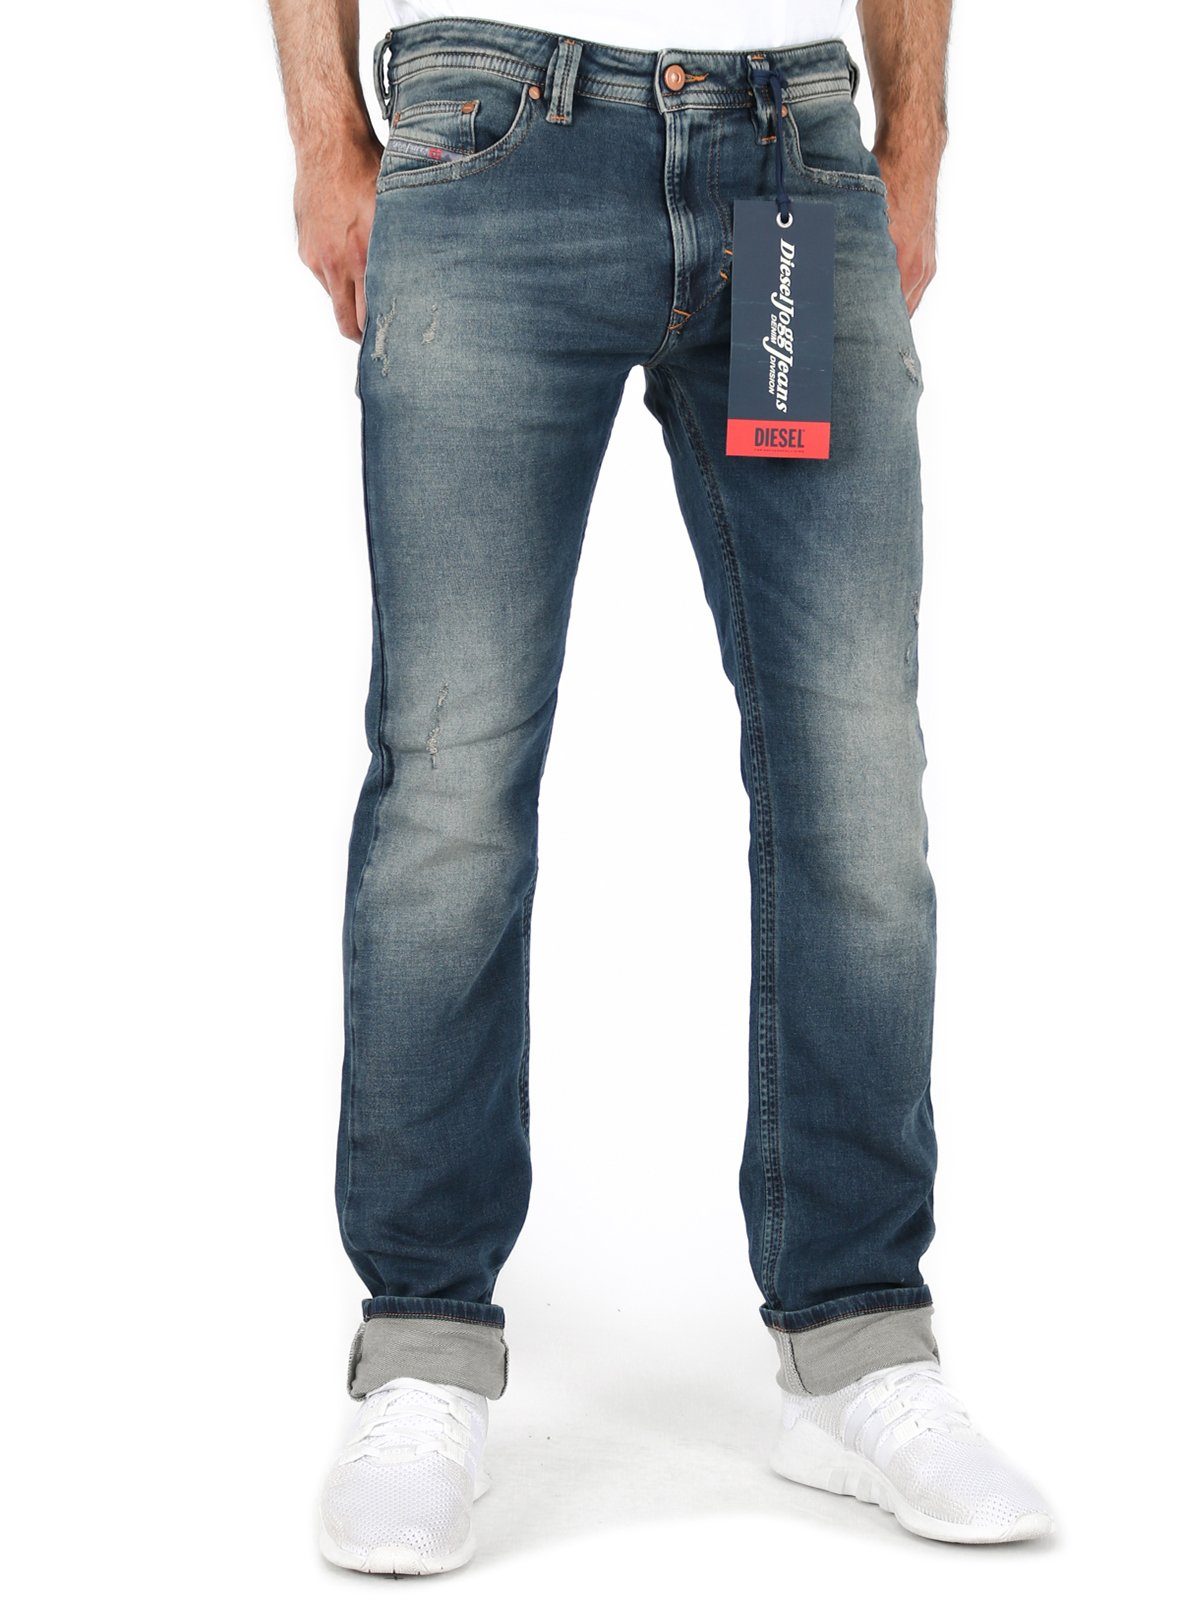 Diesel Slim-fit-Jeans Herren Jogg Jeans Stretch Hose Blau, Thavar-Ne R8TZ4  online kaufen | OTTO